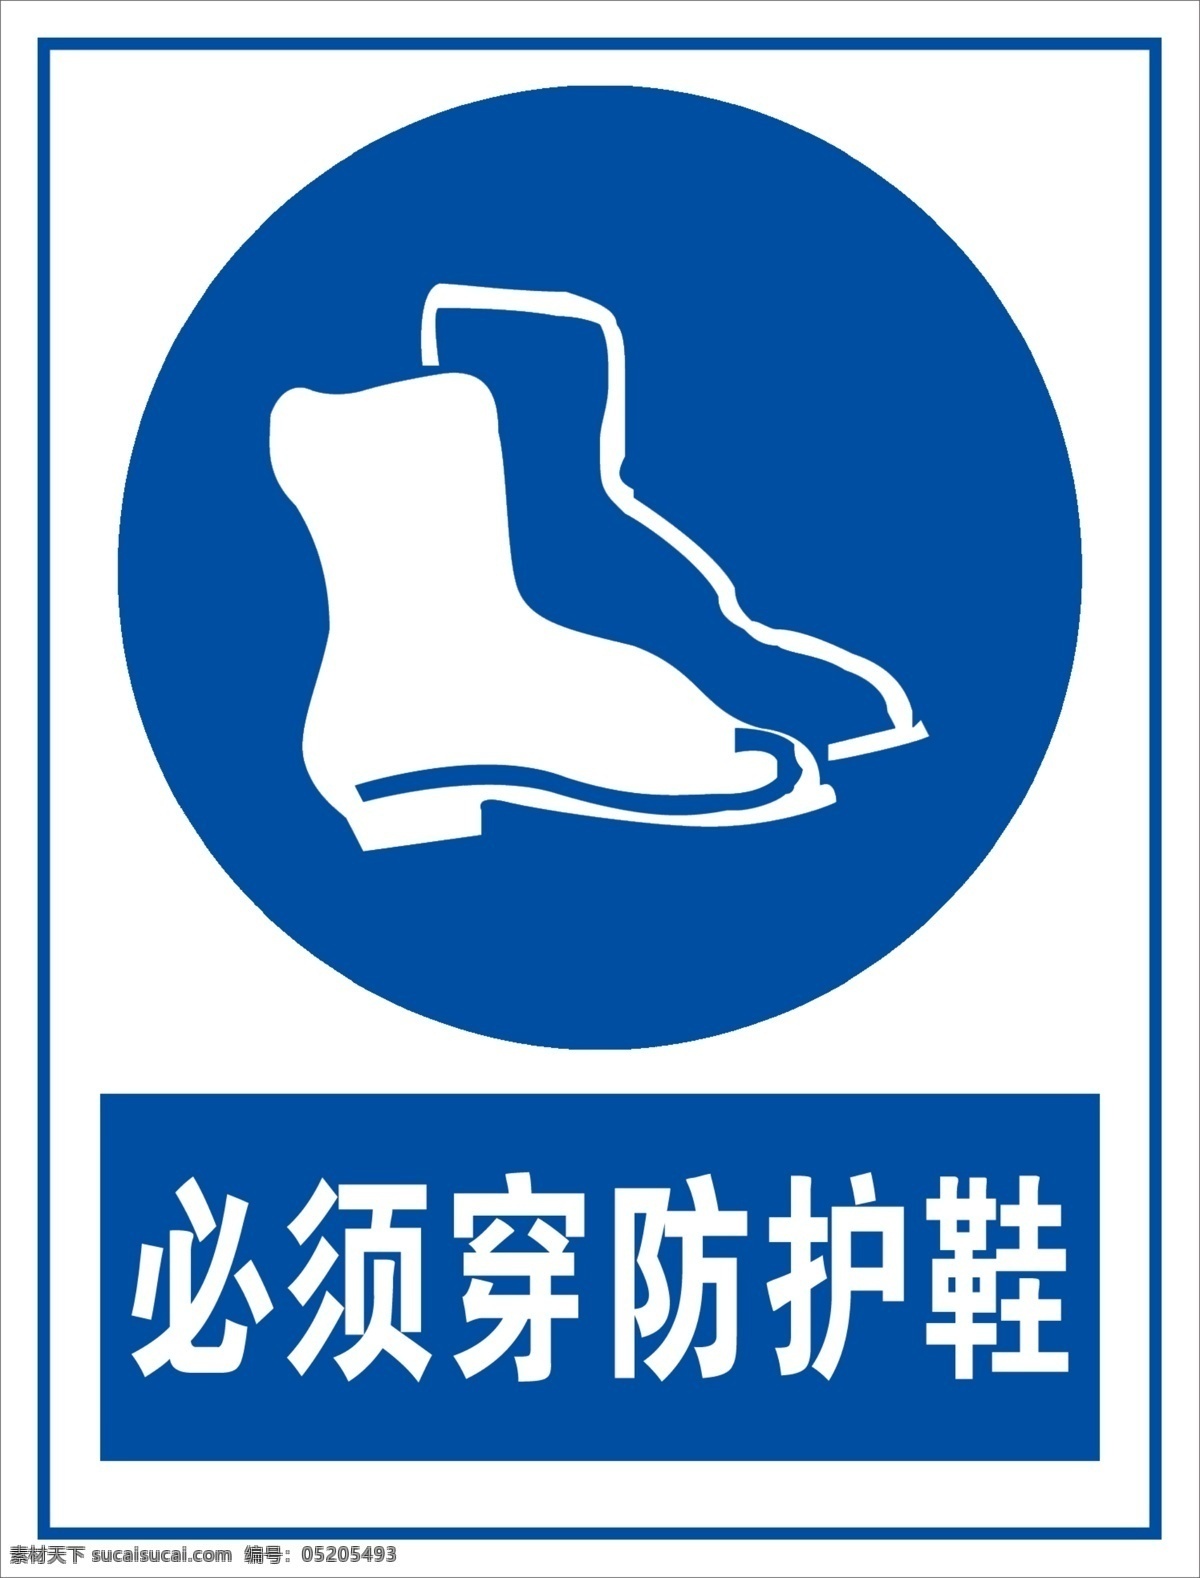 必须 穿 防护 鞋 安全标识 标识 禁止 注意 注意安全 必须穿防护鞋 穿防护鞋 防护鞋 psd源文件